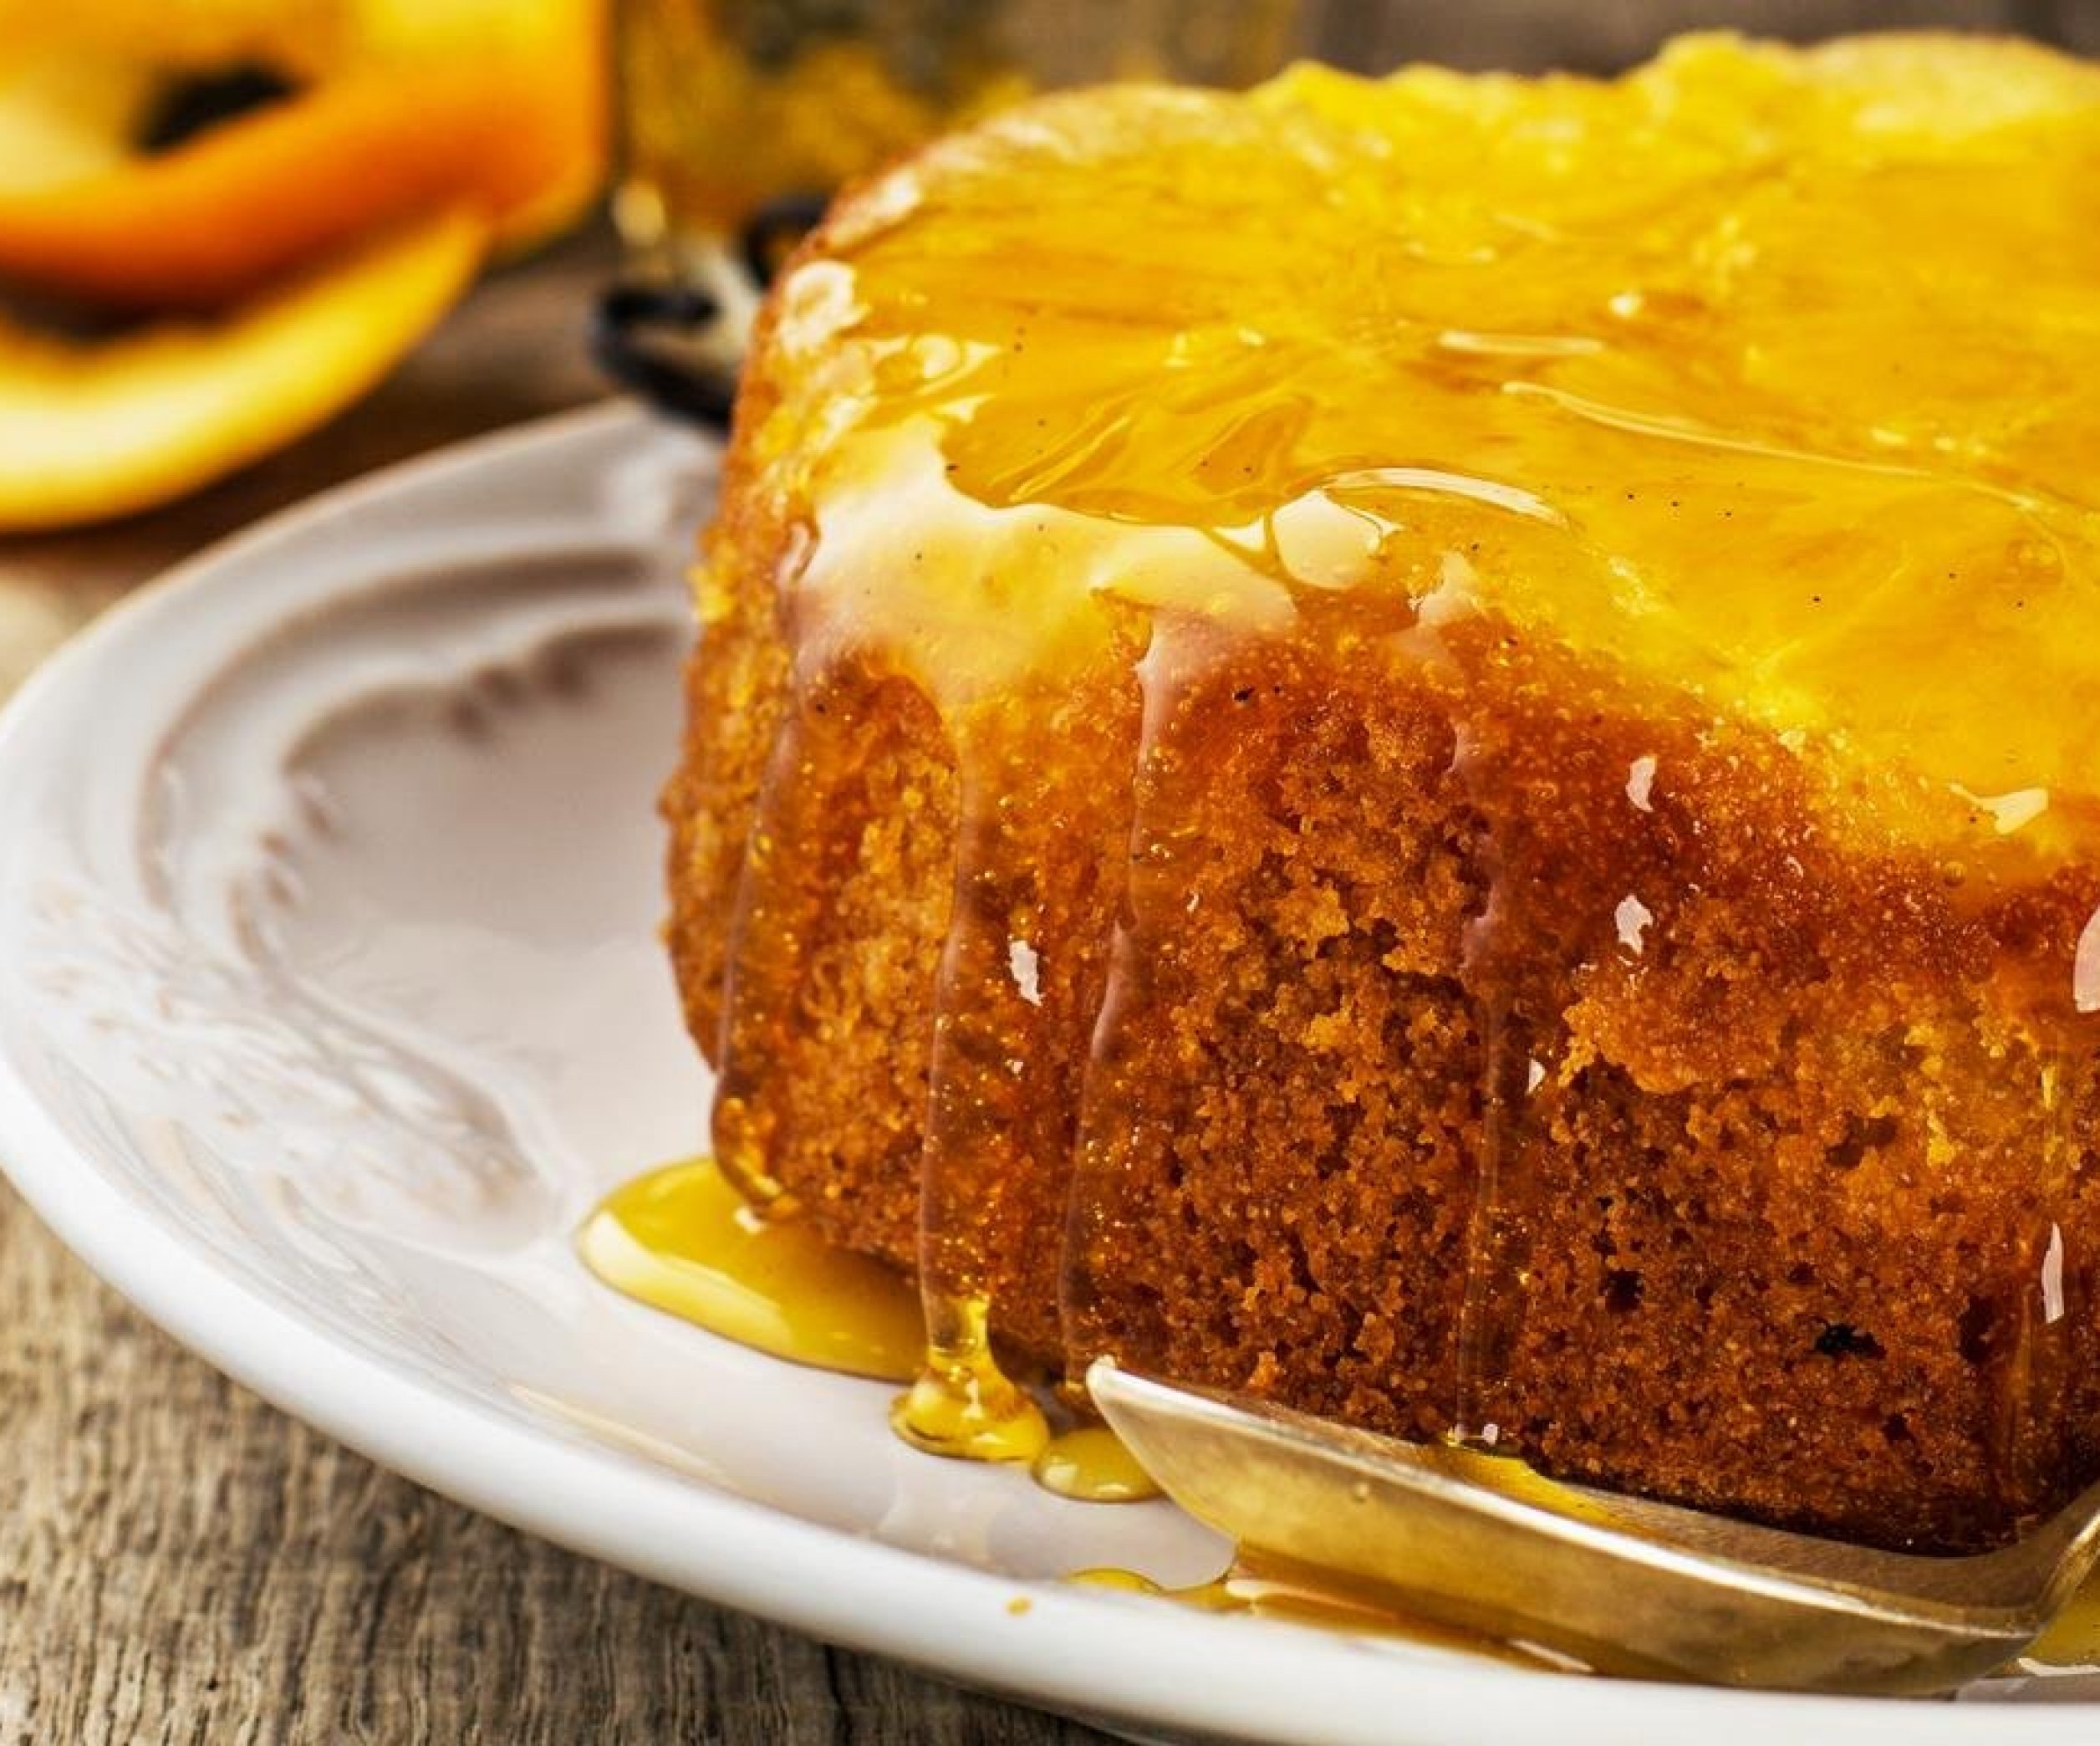 9 восхитительных ароматных пирогов с мандаринами, выбирайте лучший